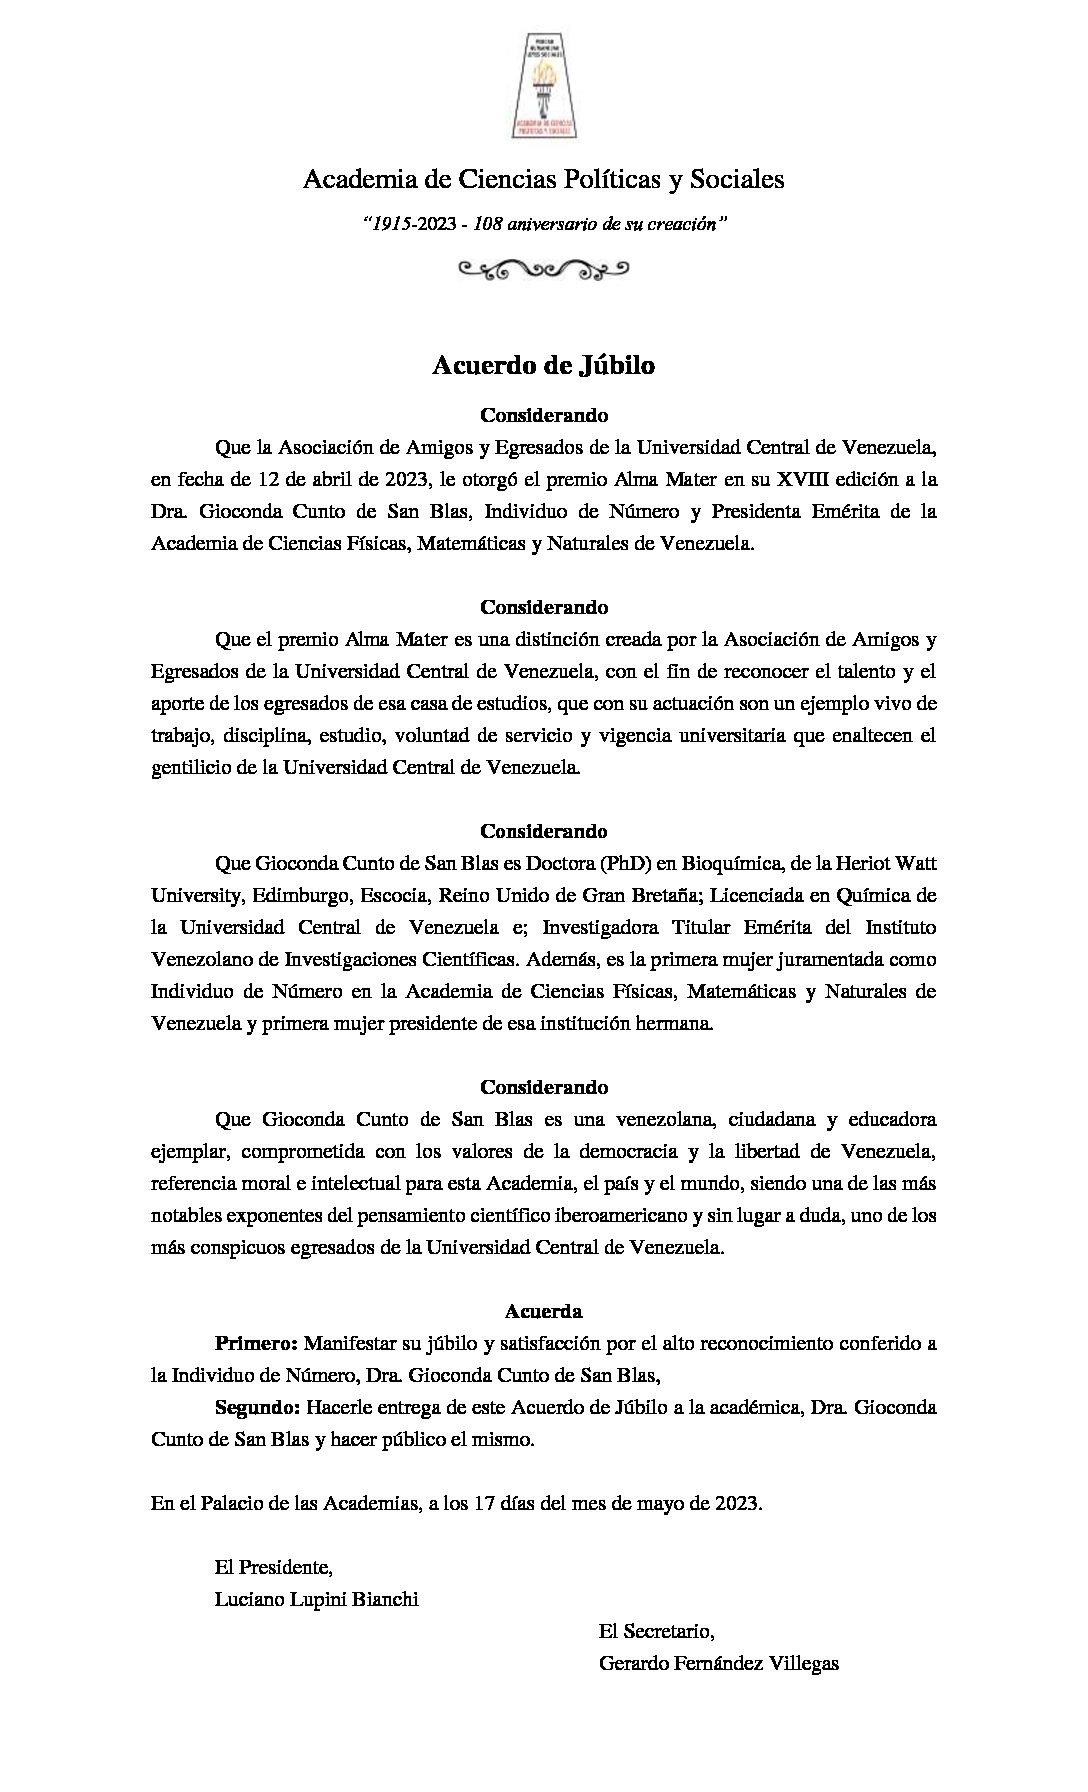 Acuerdo de júbilo por el premio Alma Mater en su XVIII edición a la Dra. Gioconda Cunto de San Blas, Individuo de Número y Presidenta Emérita de la Academia de Ciencias Físicas, Matemáticas y Naturales de Venezuela.